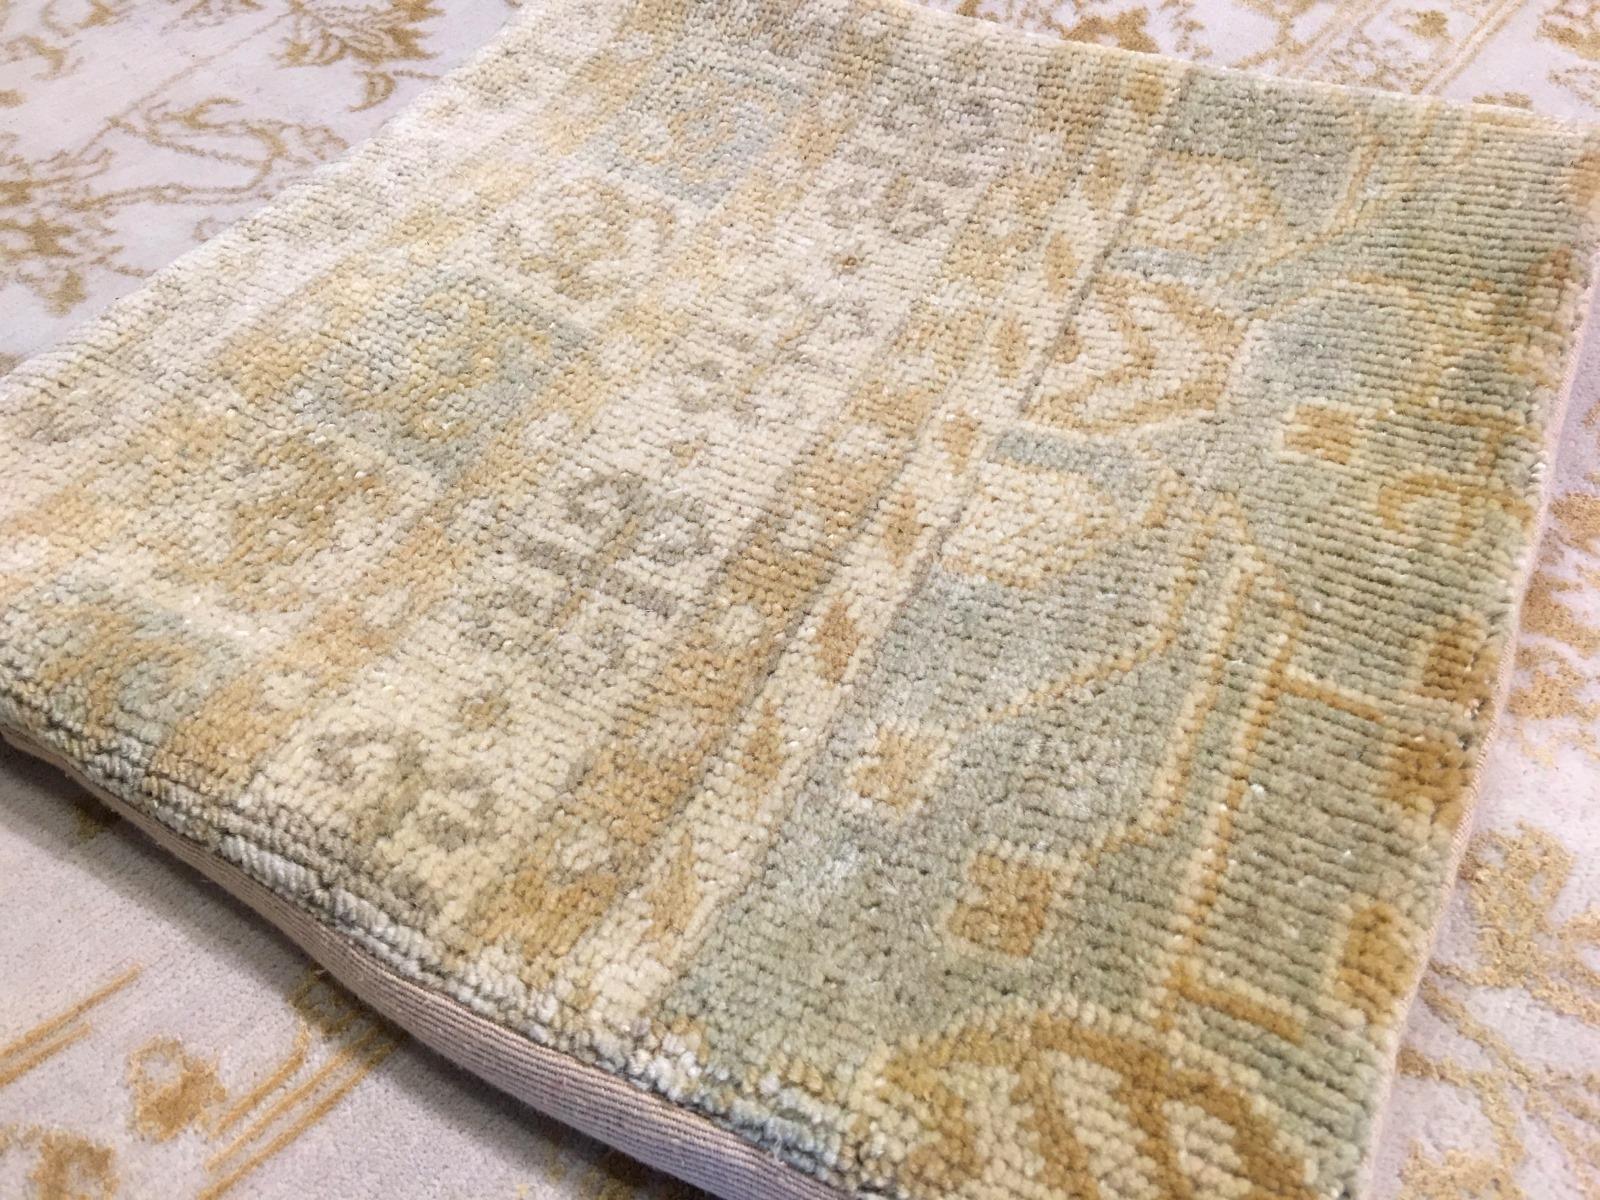 Schöne handgeknüpfte Khotan Design Teppich Kissen Abdeckung, Wolle Flor. Schöne verblasste Farbe, Rückwand aus Baumwollstoff, mit Reißverschluss. Wird ohne Füllung geliefert.